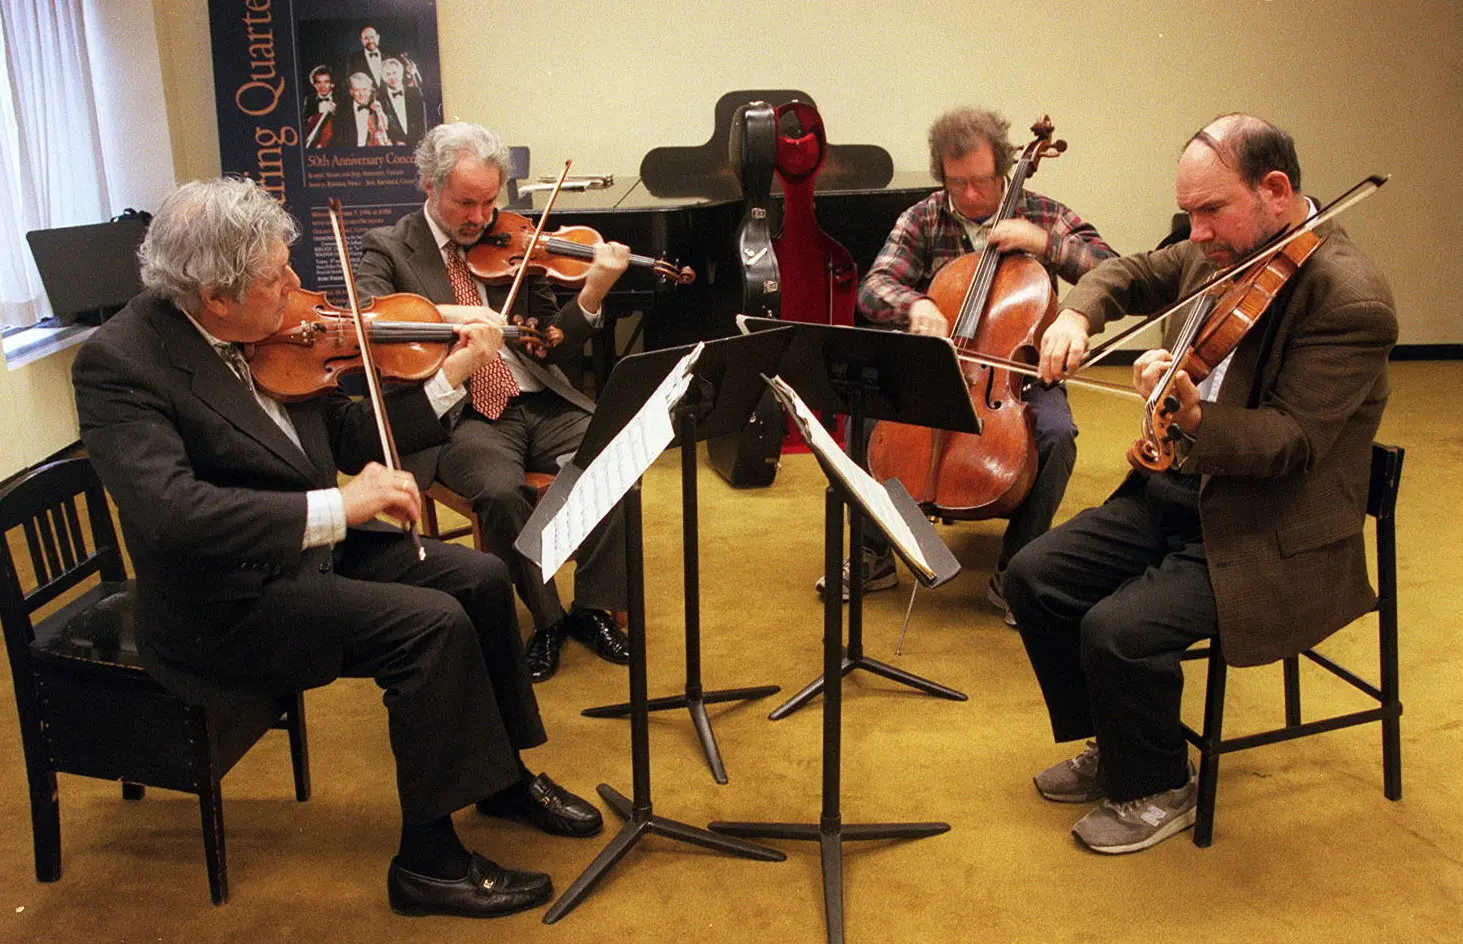 Sr. Mann, à esquerda, ensaiando com os outros membros do Juilliard String Quartet, Joel Smirnoff, Joel Krosnick e Samuel Rhodes, na Juilliard School em 1996.Crédito...Ruby Washington/The New York Times